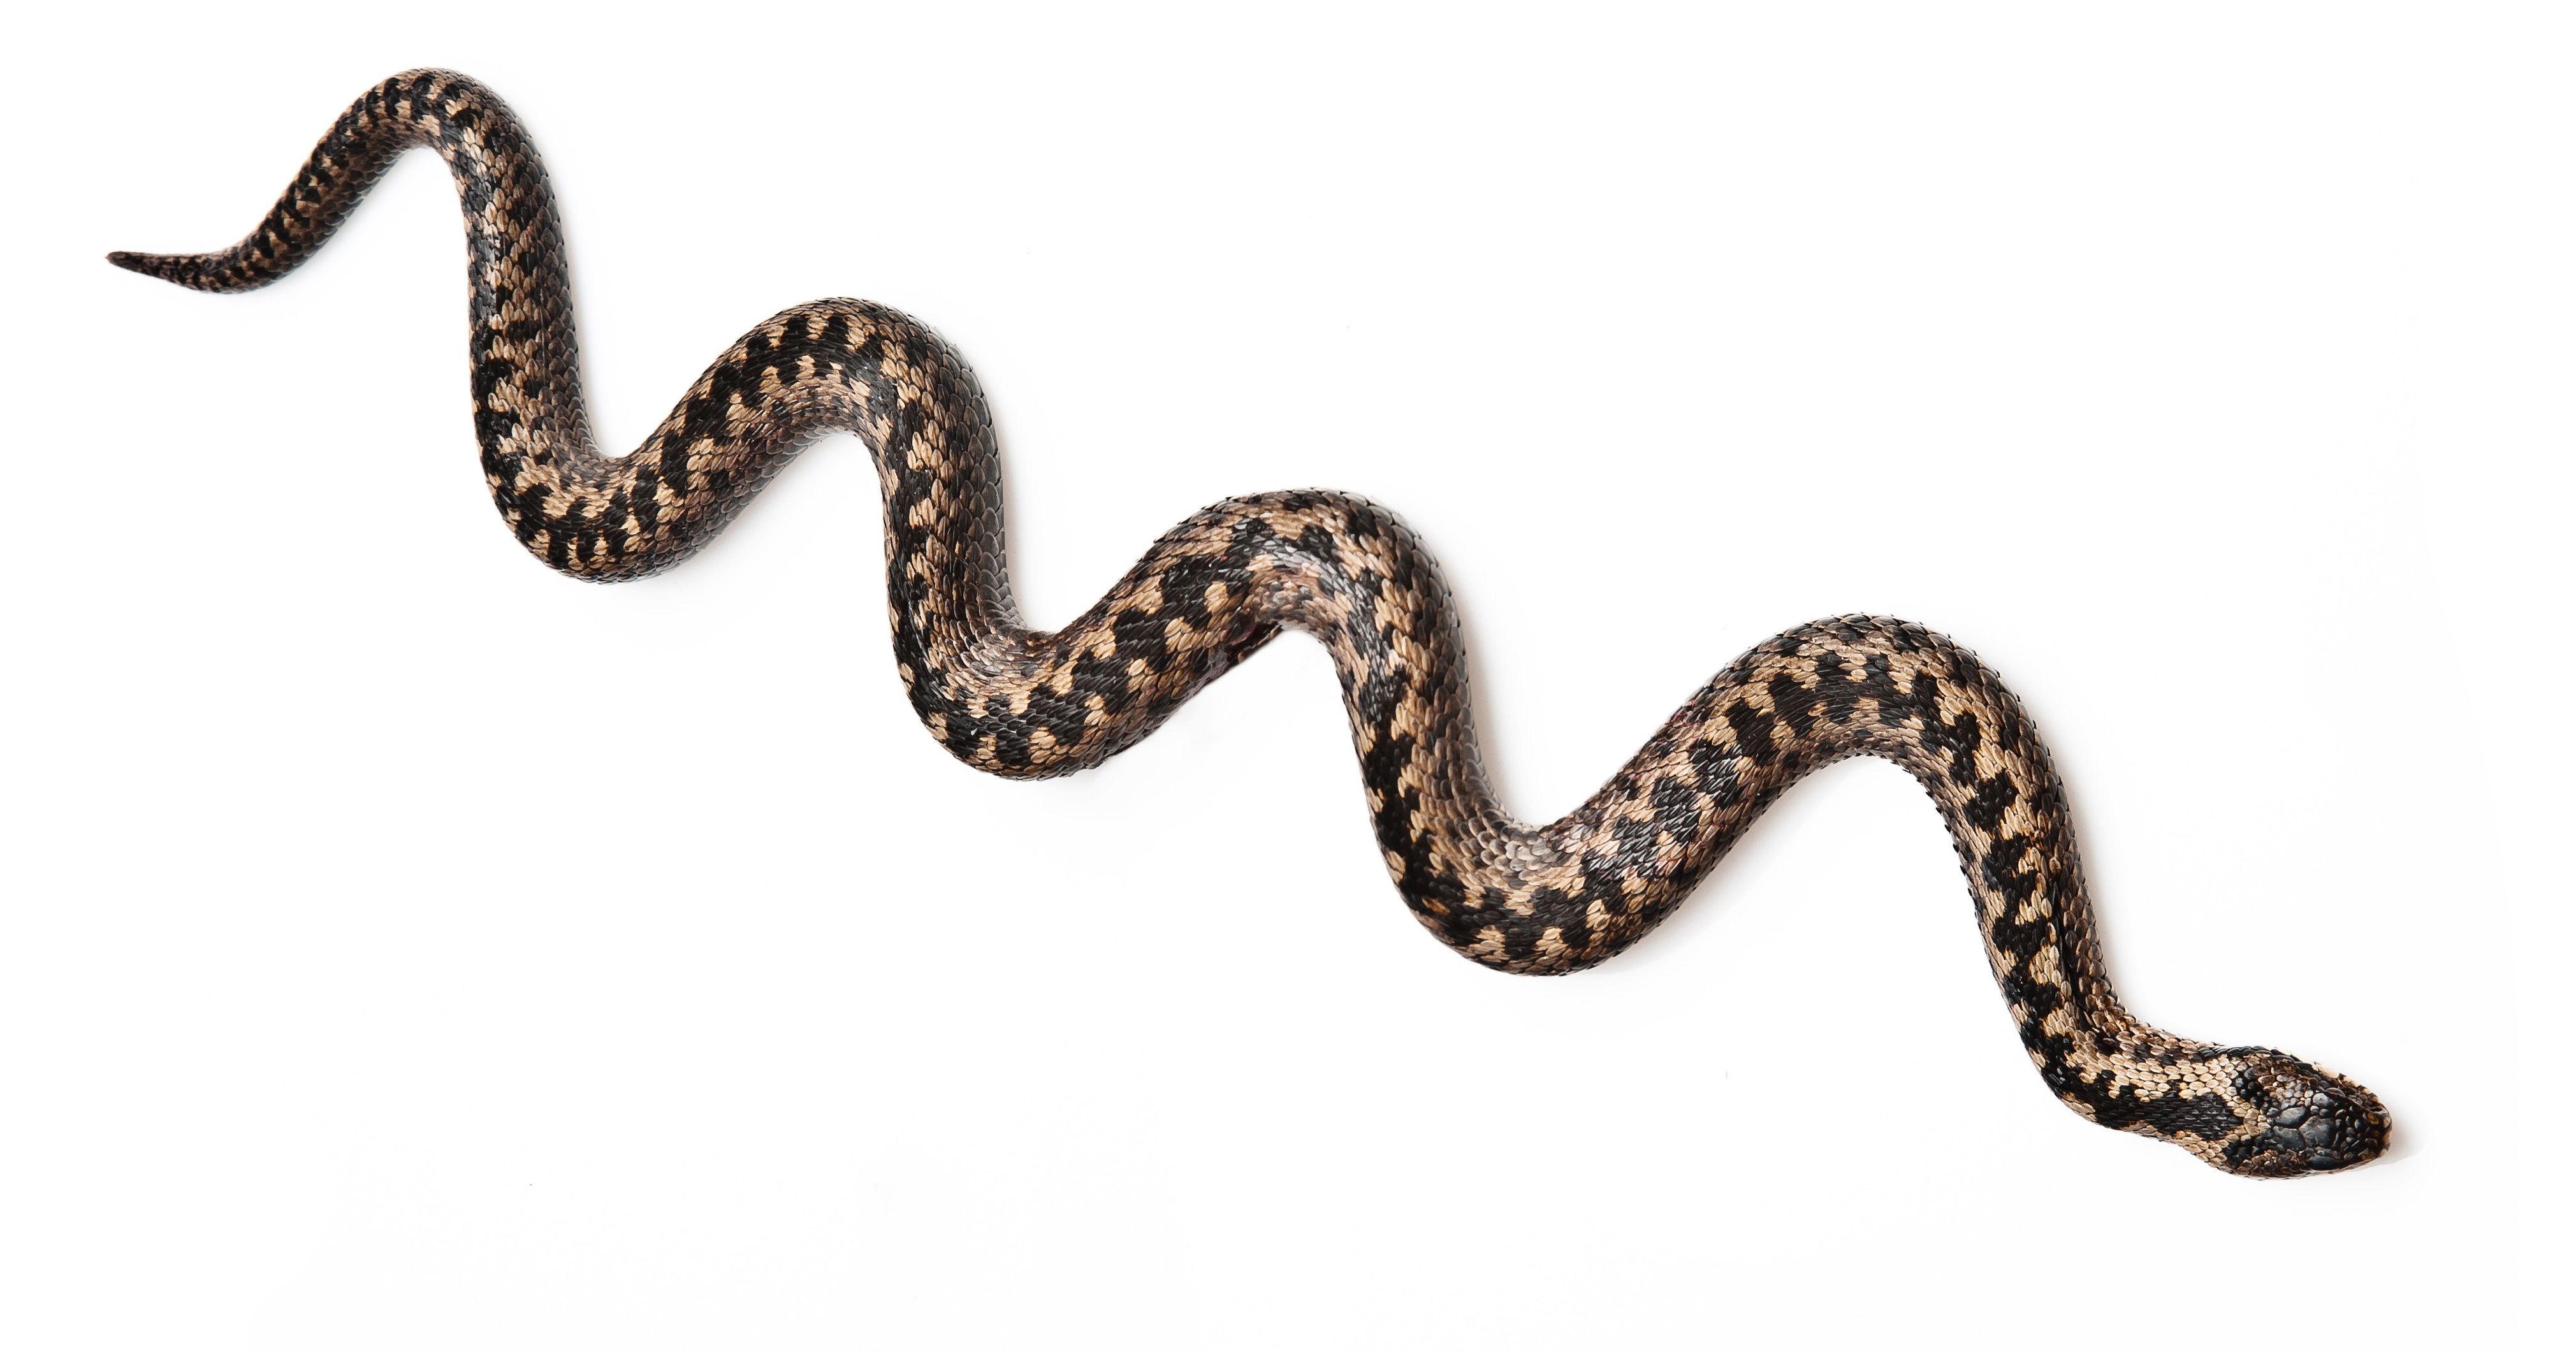 Главная опасность змей сейчас в том, что они только проснулись. Фото: Shutterstock